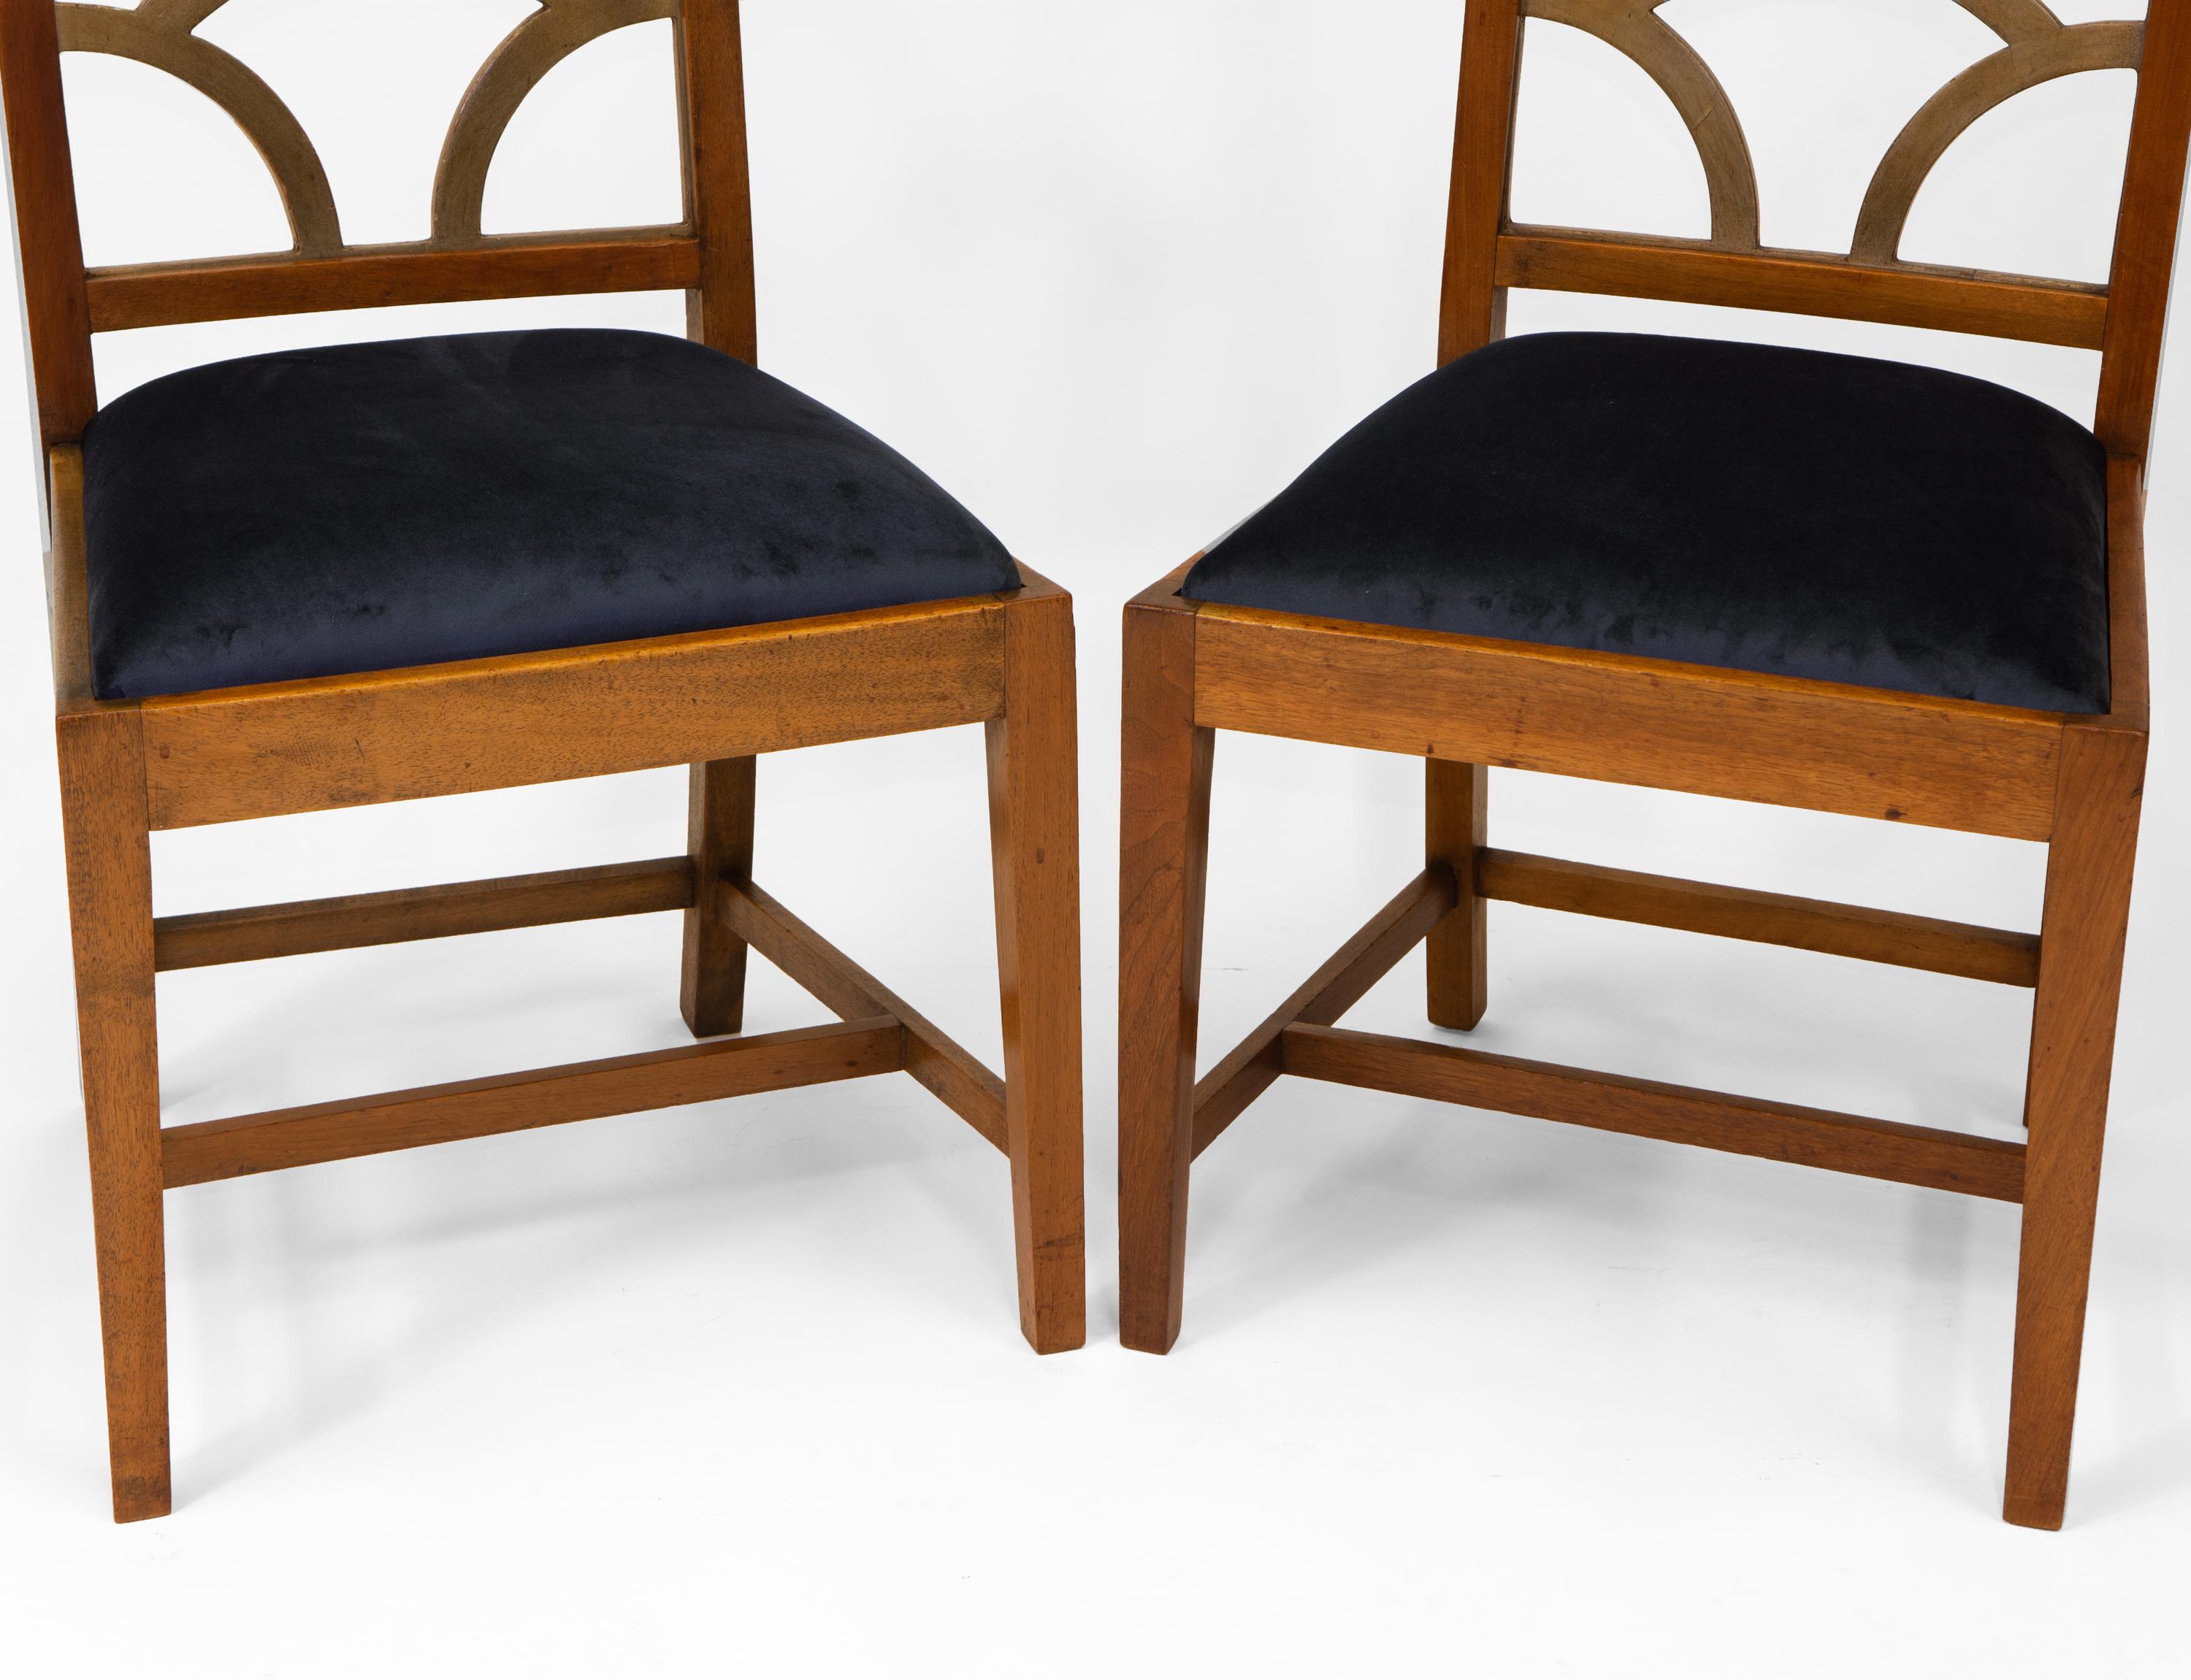 Rowley Gallery Art Deco-Paar  Nussbaum Wolke Form zurück Side Chairs 1930's (Samt)